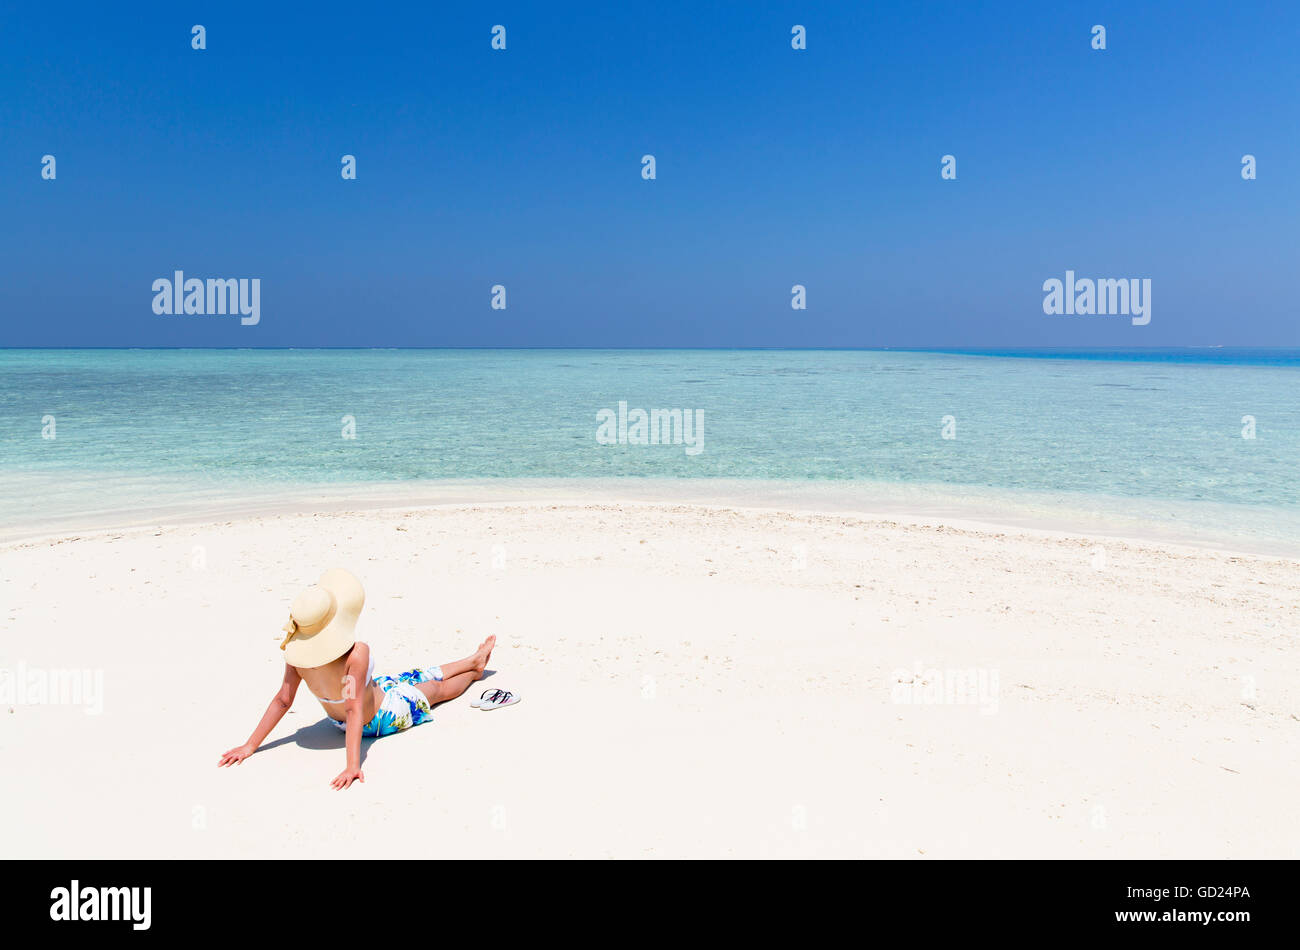 Femme sur banc de sable, l'Atoll de Kaafu, Maldives, océan Indien, Asie Banque D'Images